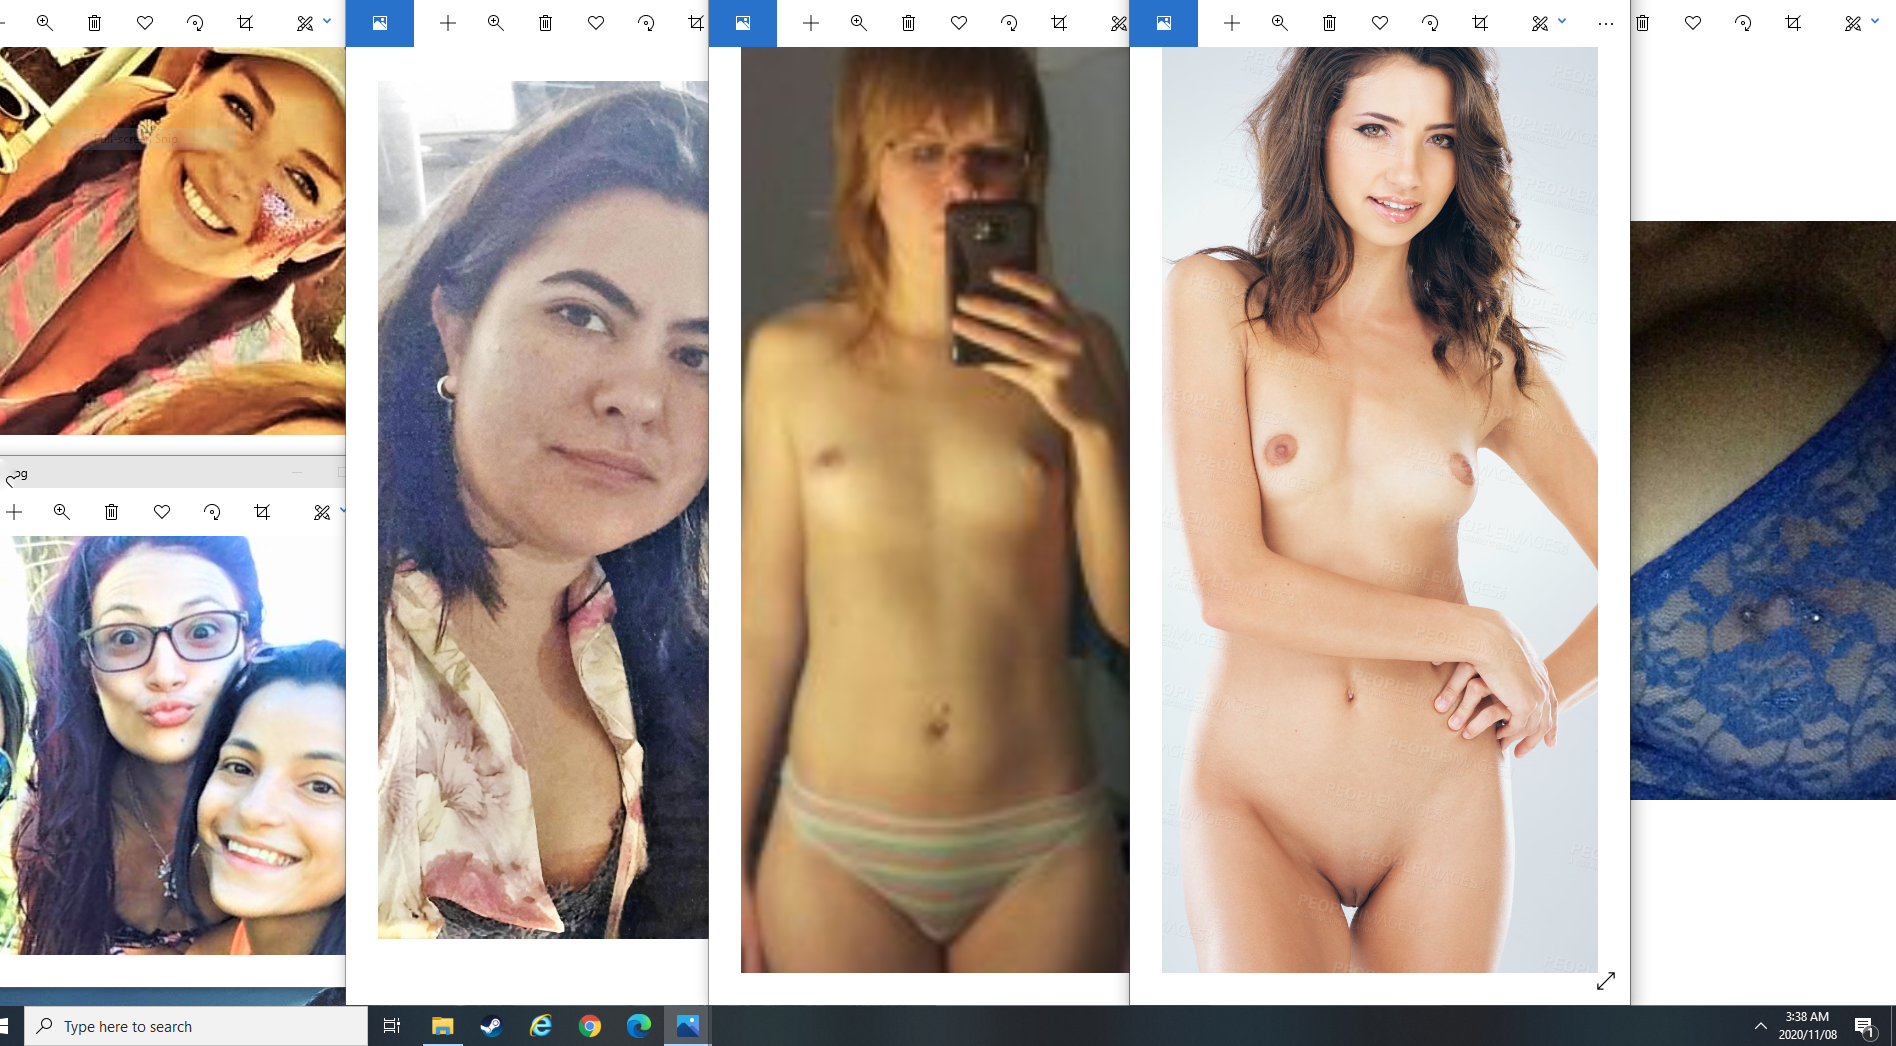 Amazing amateur girl megamix - leaked pics